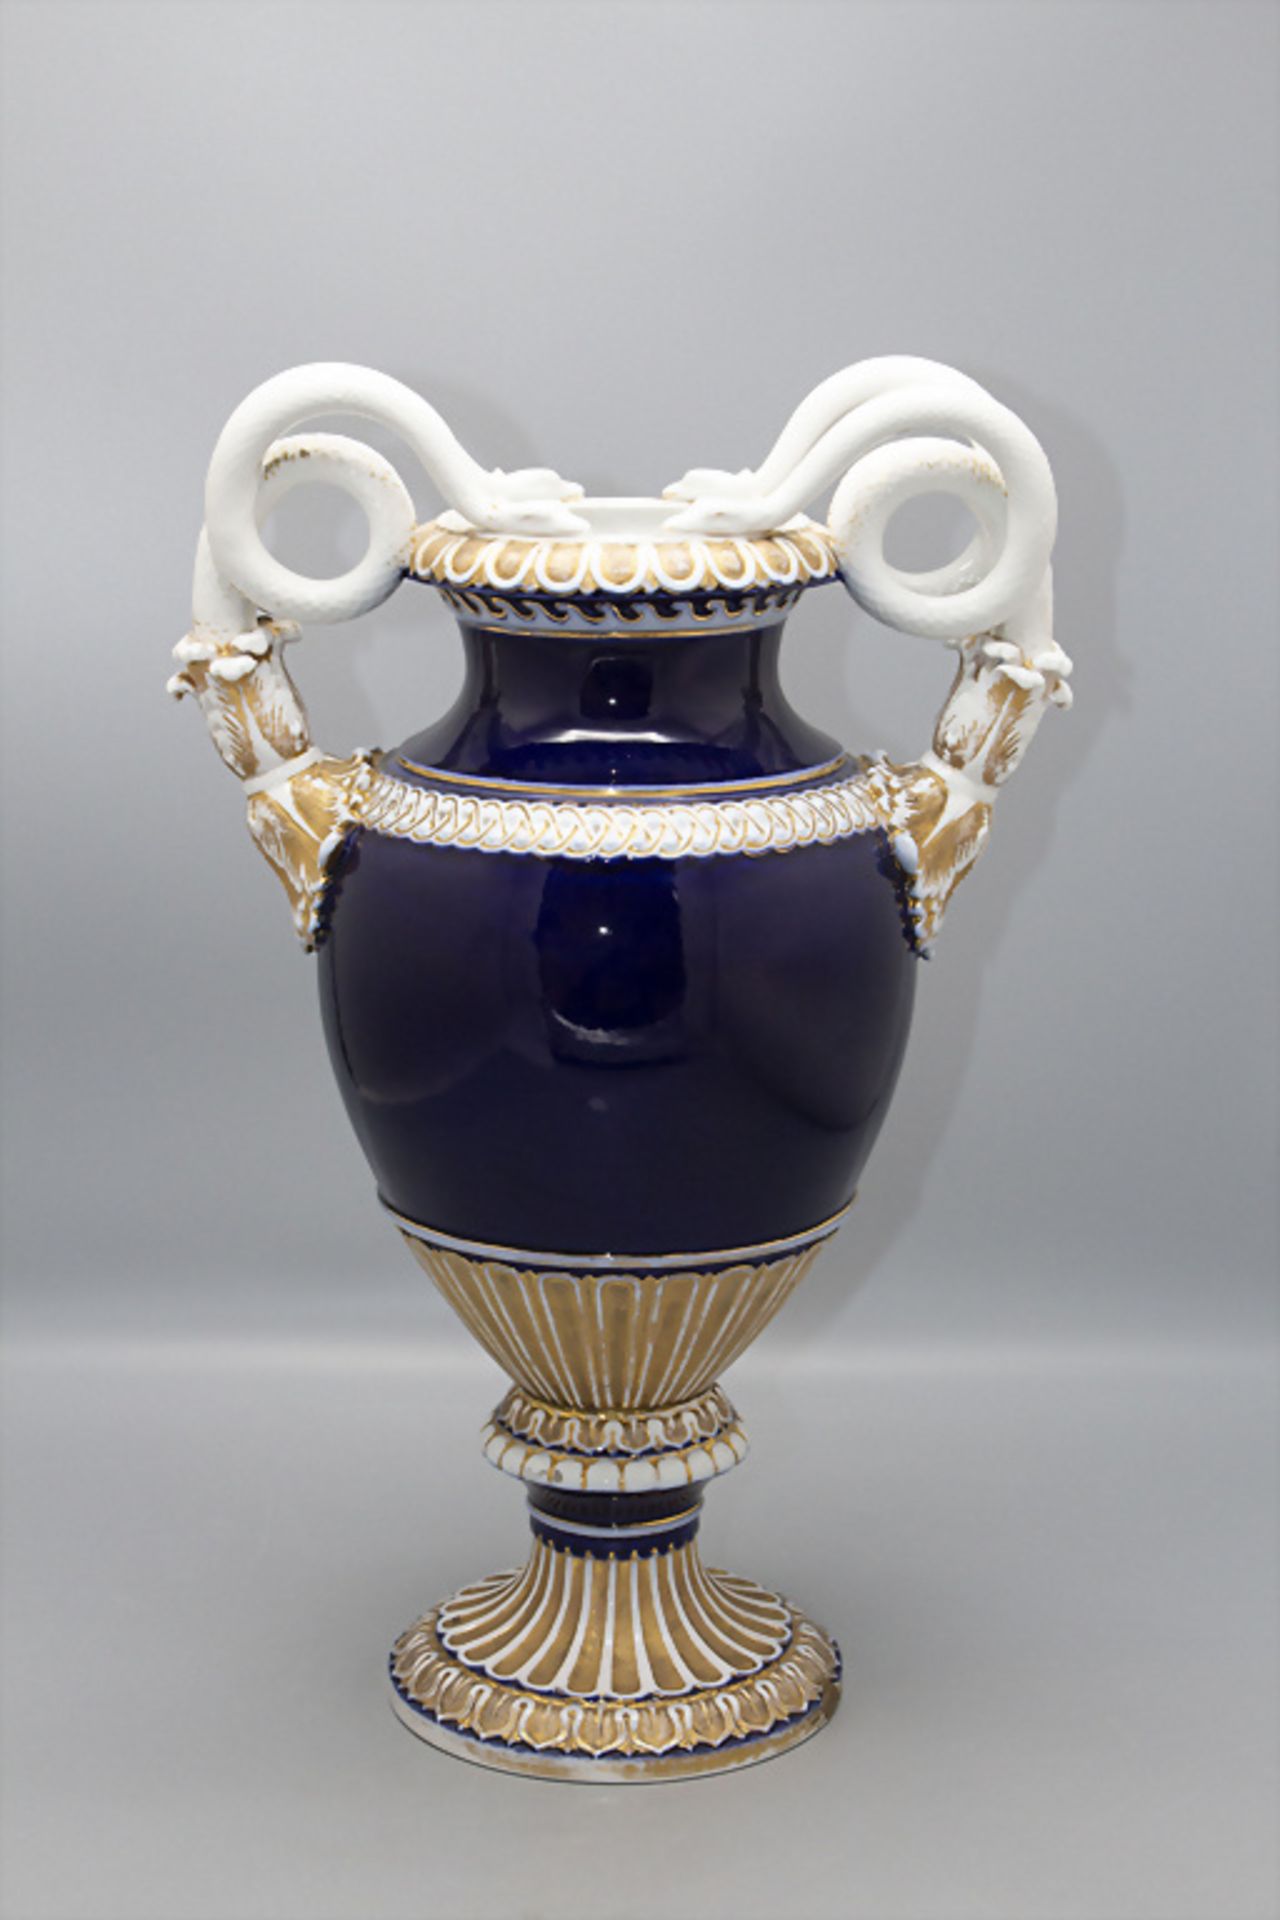 Schlangenhenkelvase / A splendid snake handled vase with flowers, Meissen, 1860-1924